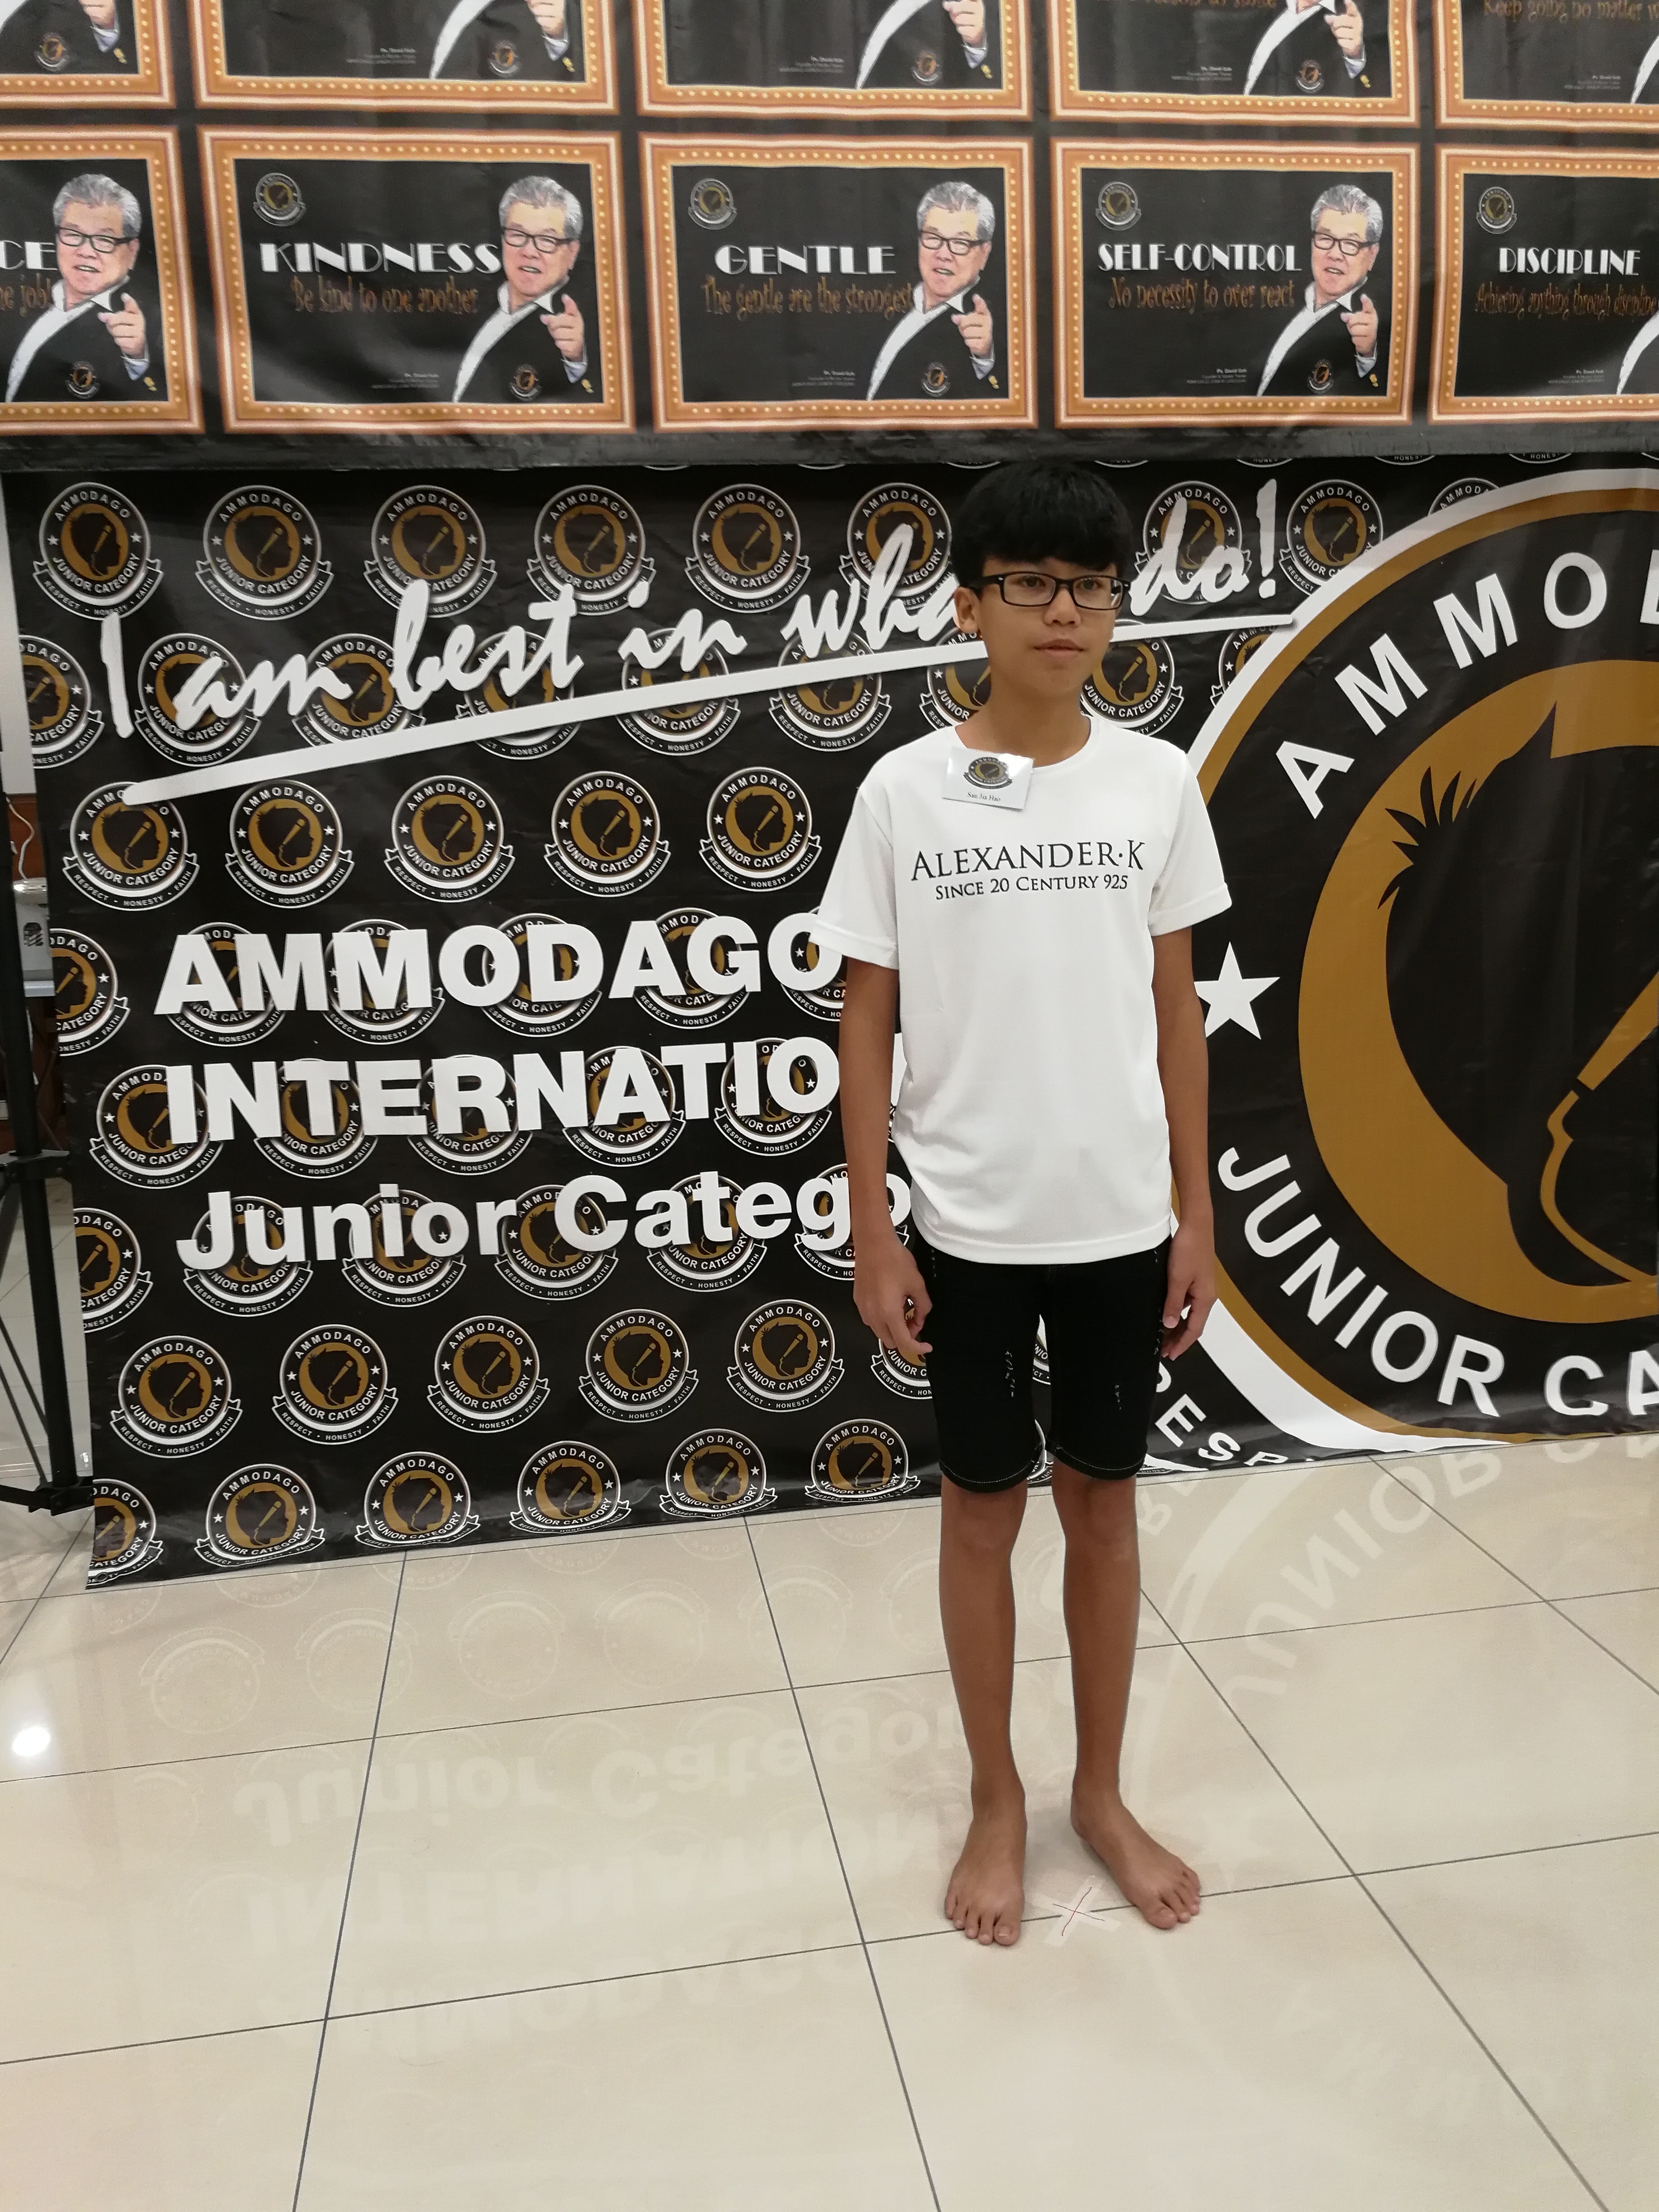 Ammodago International - Junior Category in Malaysia - Master David Goh at Gereja Joy Sogo 苏雅喜乐堂